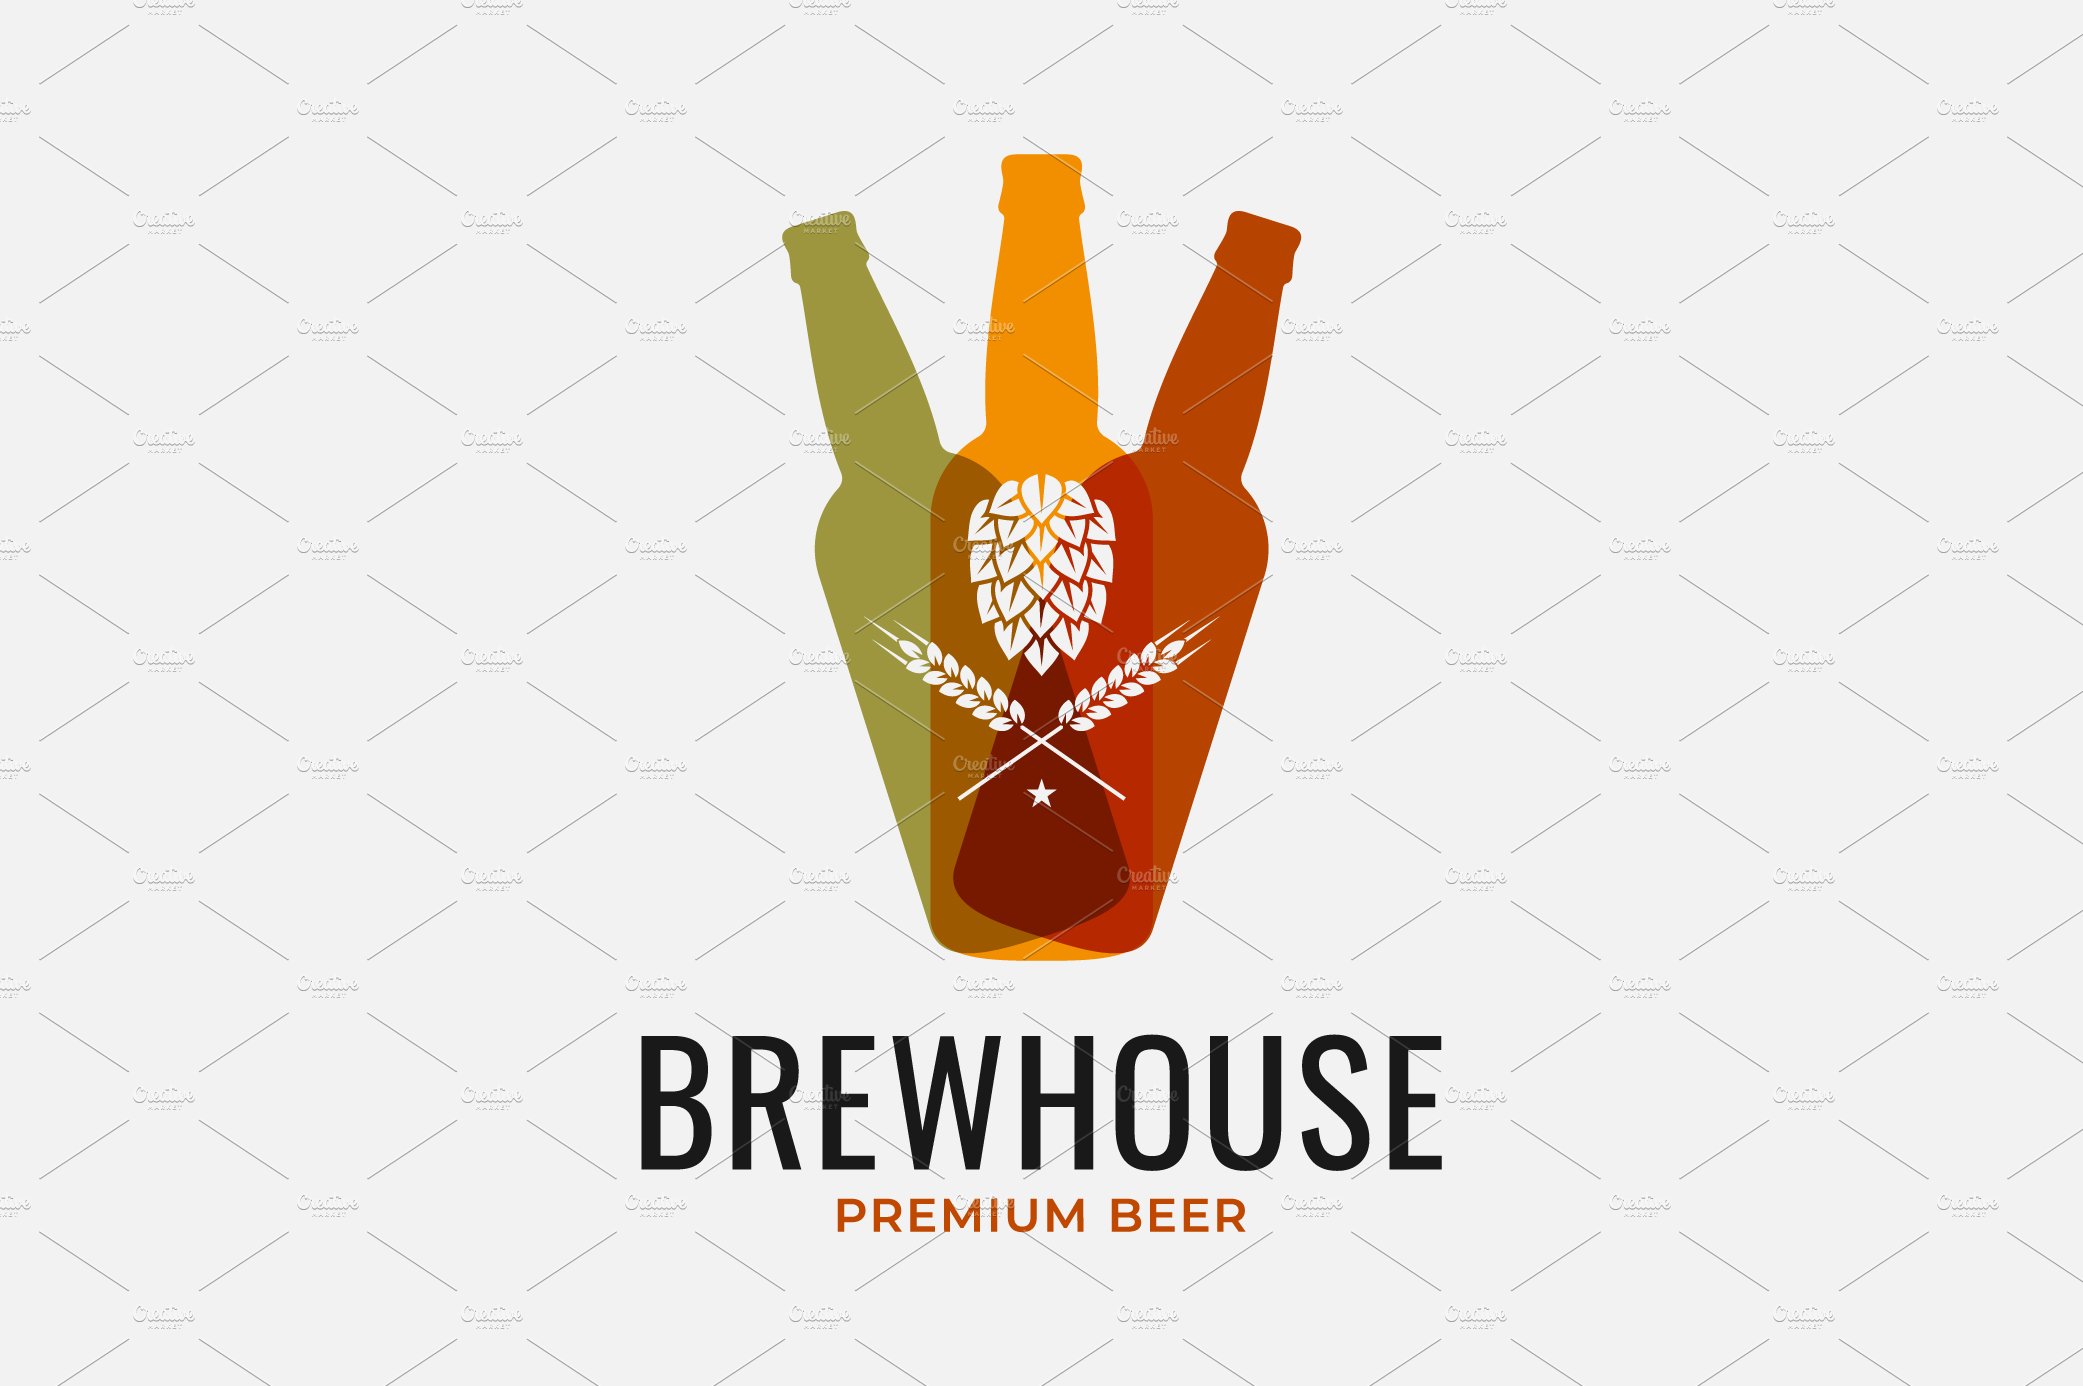 Beer bottles logo. Beer hops. cover image.